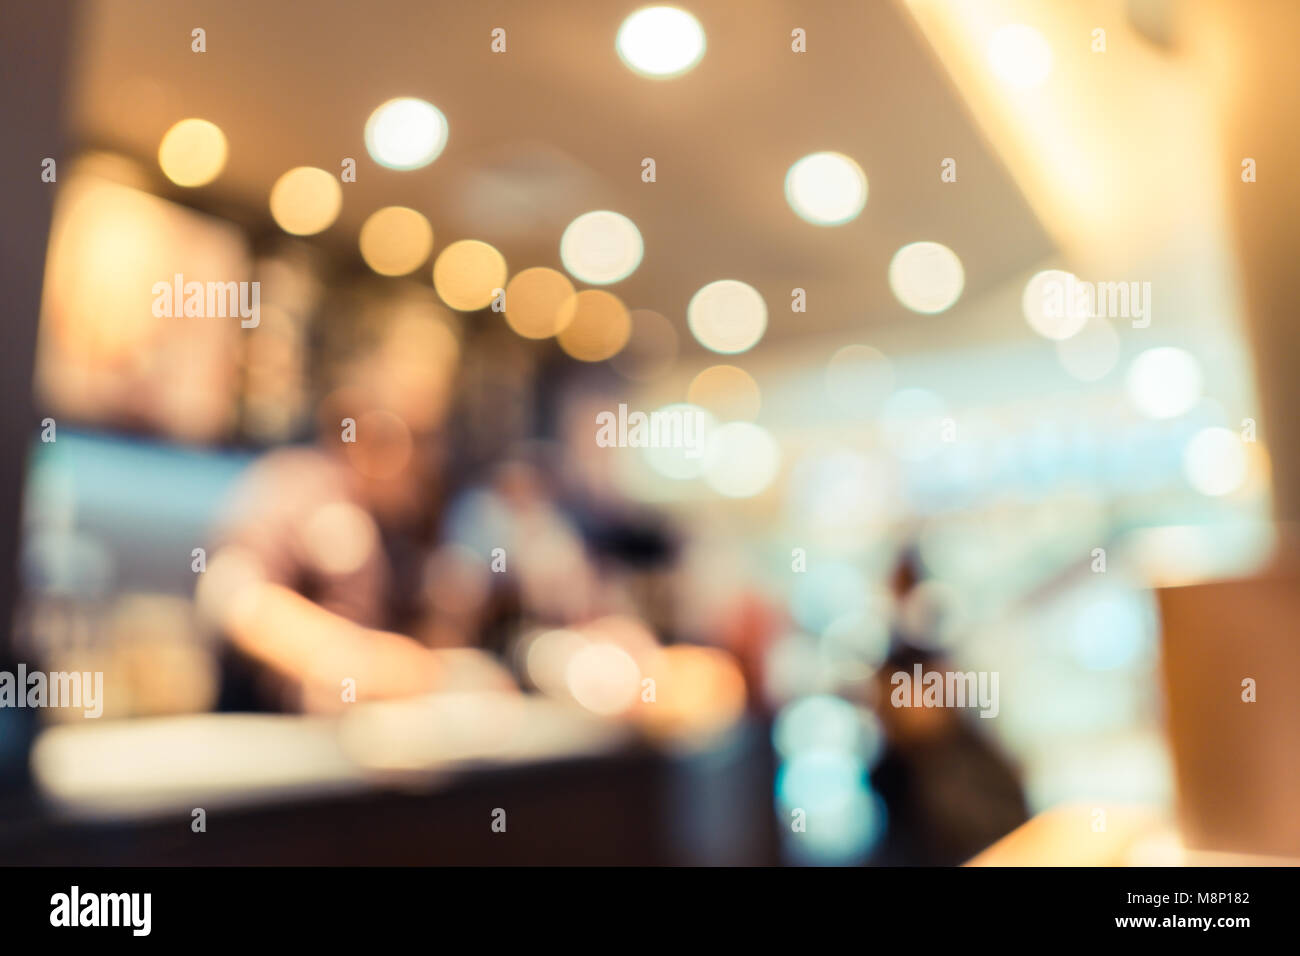 Sfocare lo sfondo del cliente seduto nella caffetteria o ristorante cafe con bokeh di luce. Foto Stock